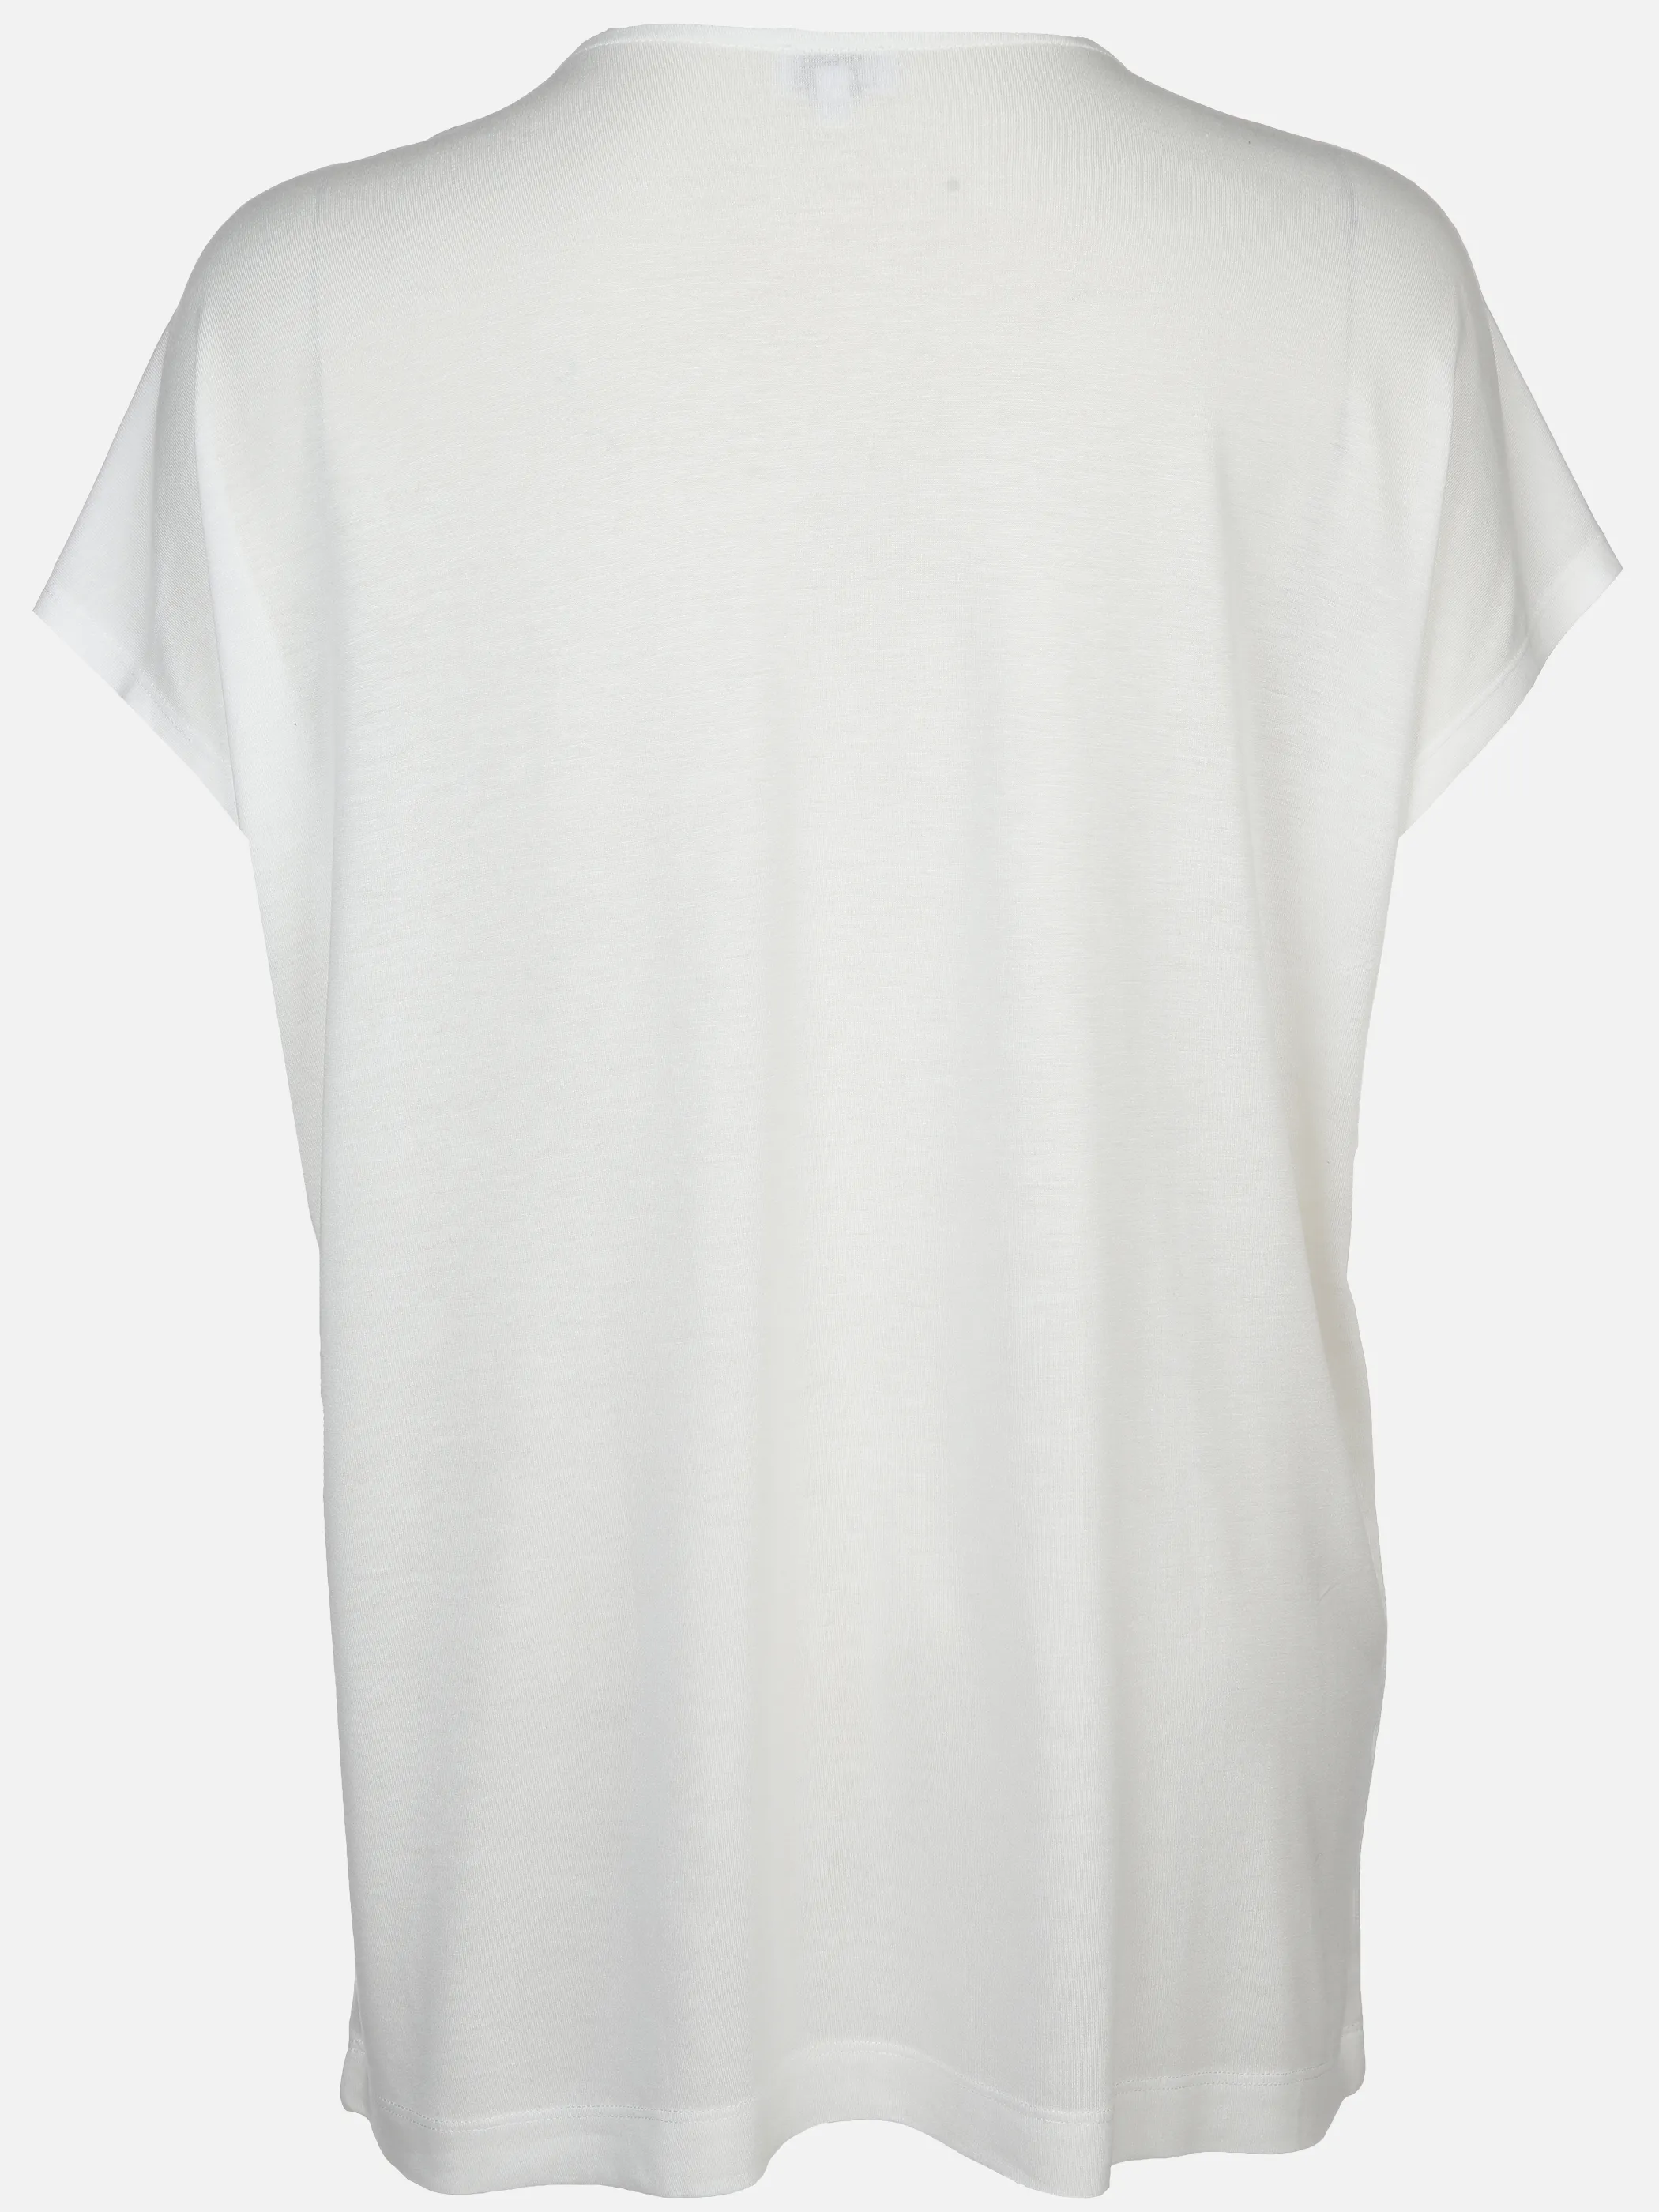 Sonja Blank Da-gr.Gr. T-Shirt V-Ausschnitt Weiß 890335 OFFWHITE 2